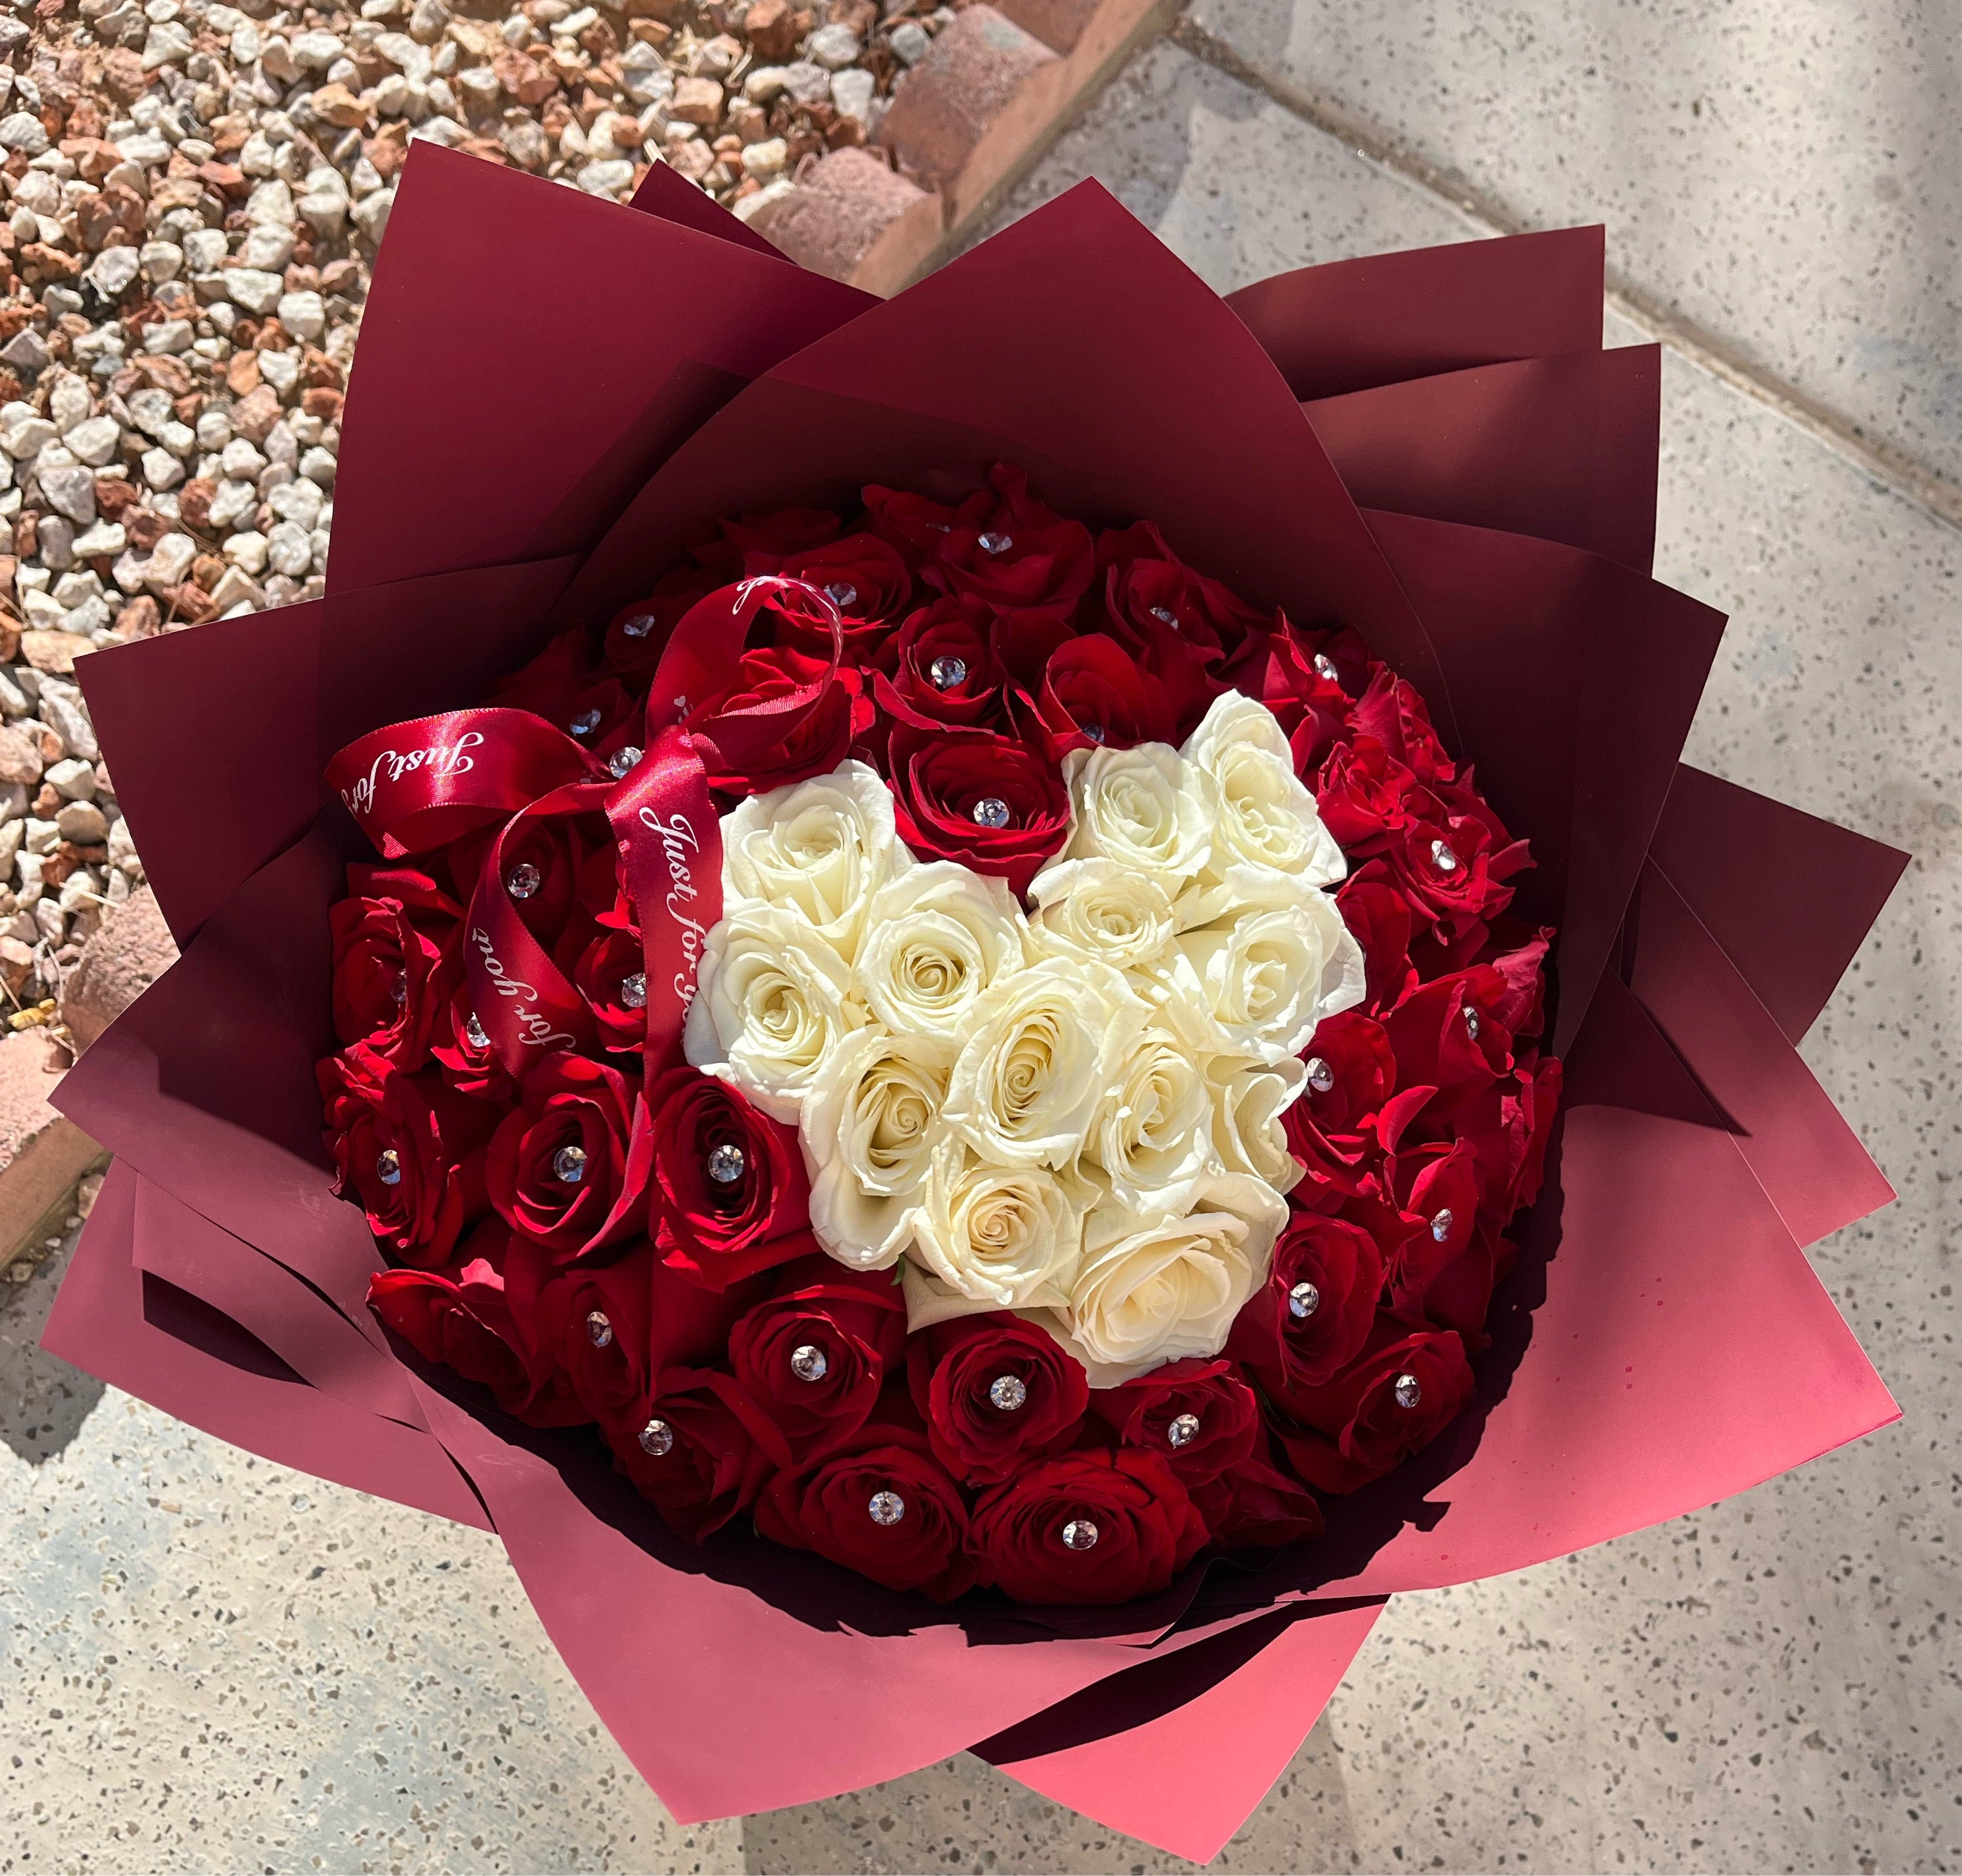 LV wrapping Paper, Flower Arrangement, bouquets, Ramo De Flores